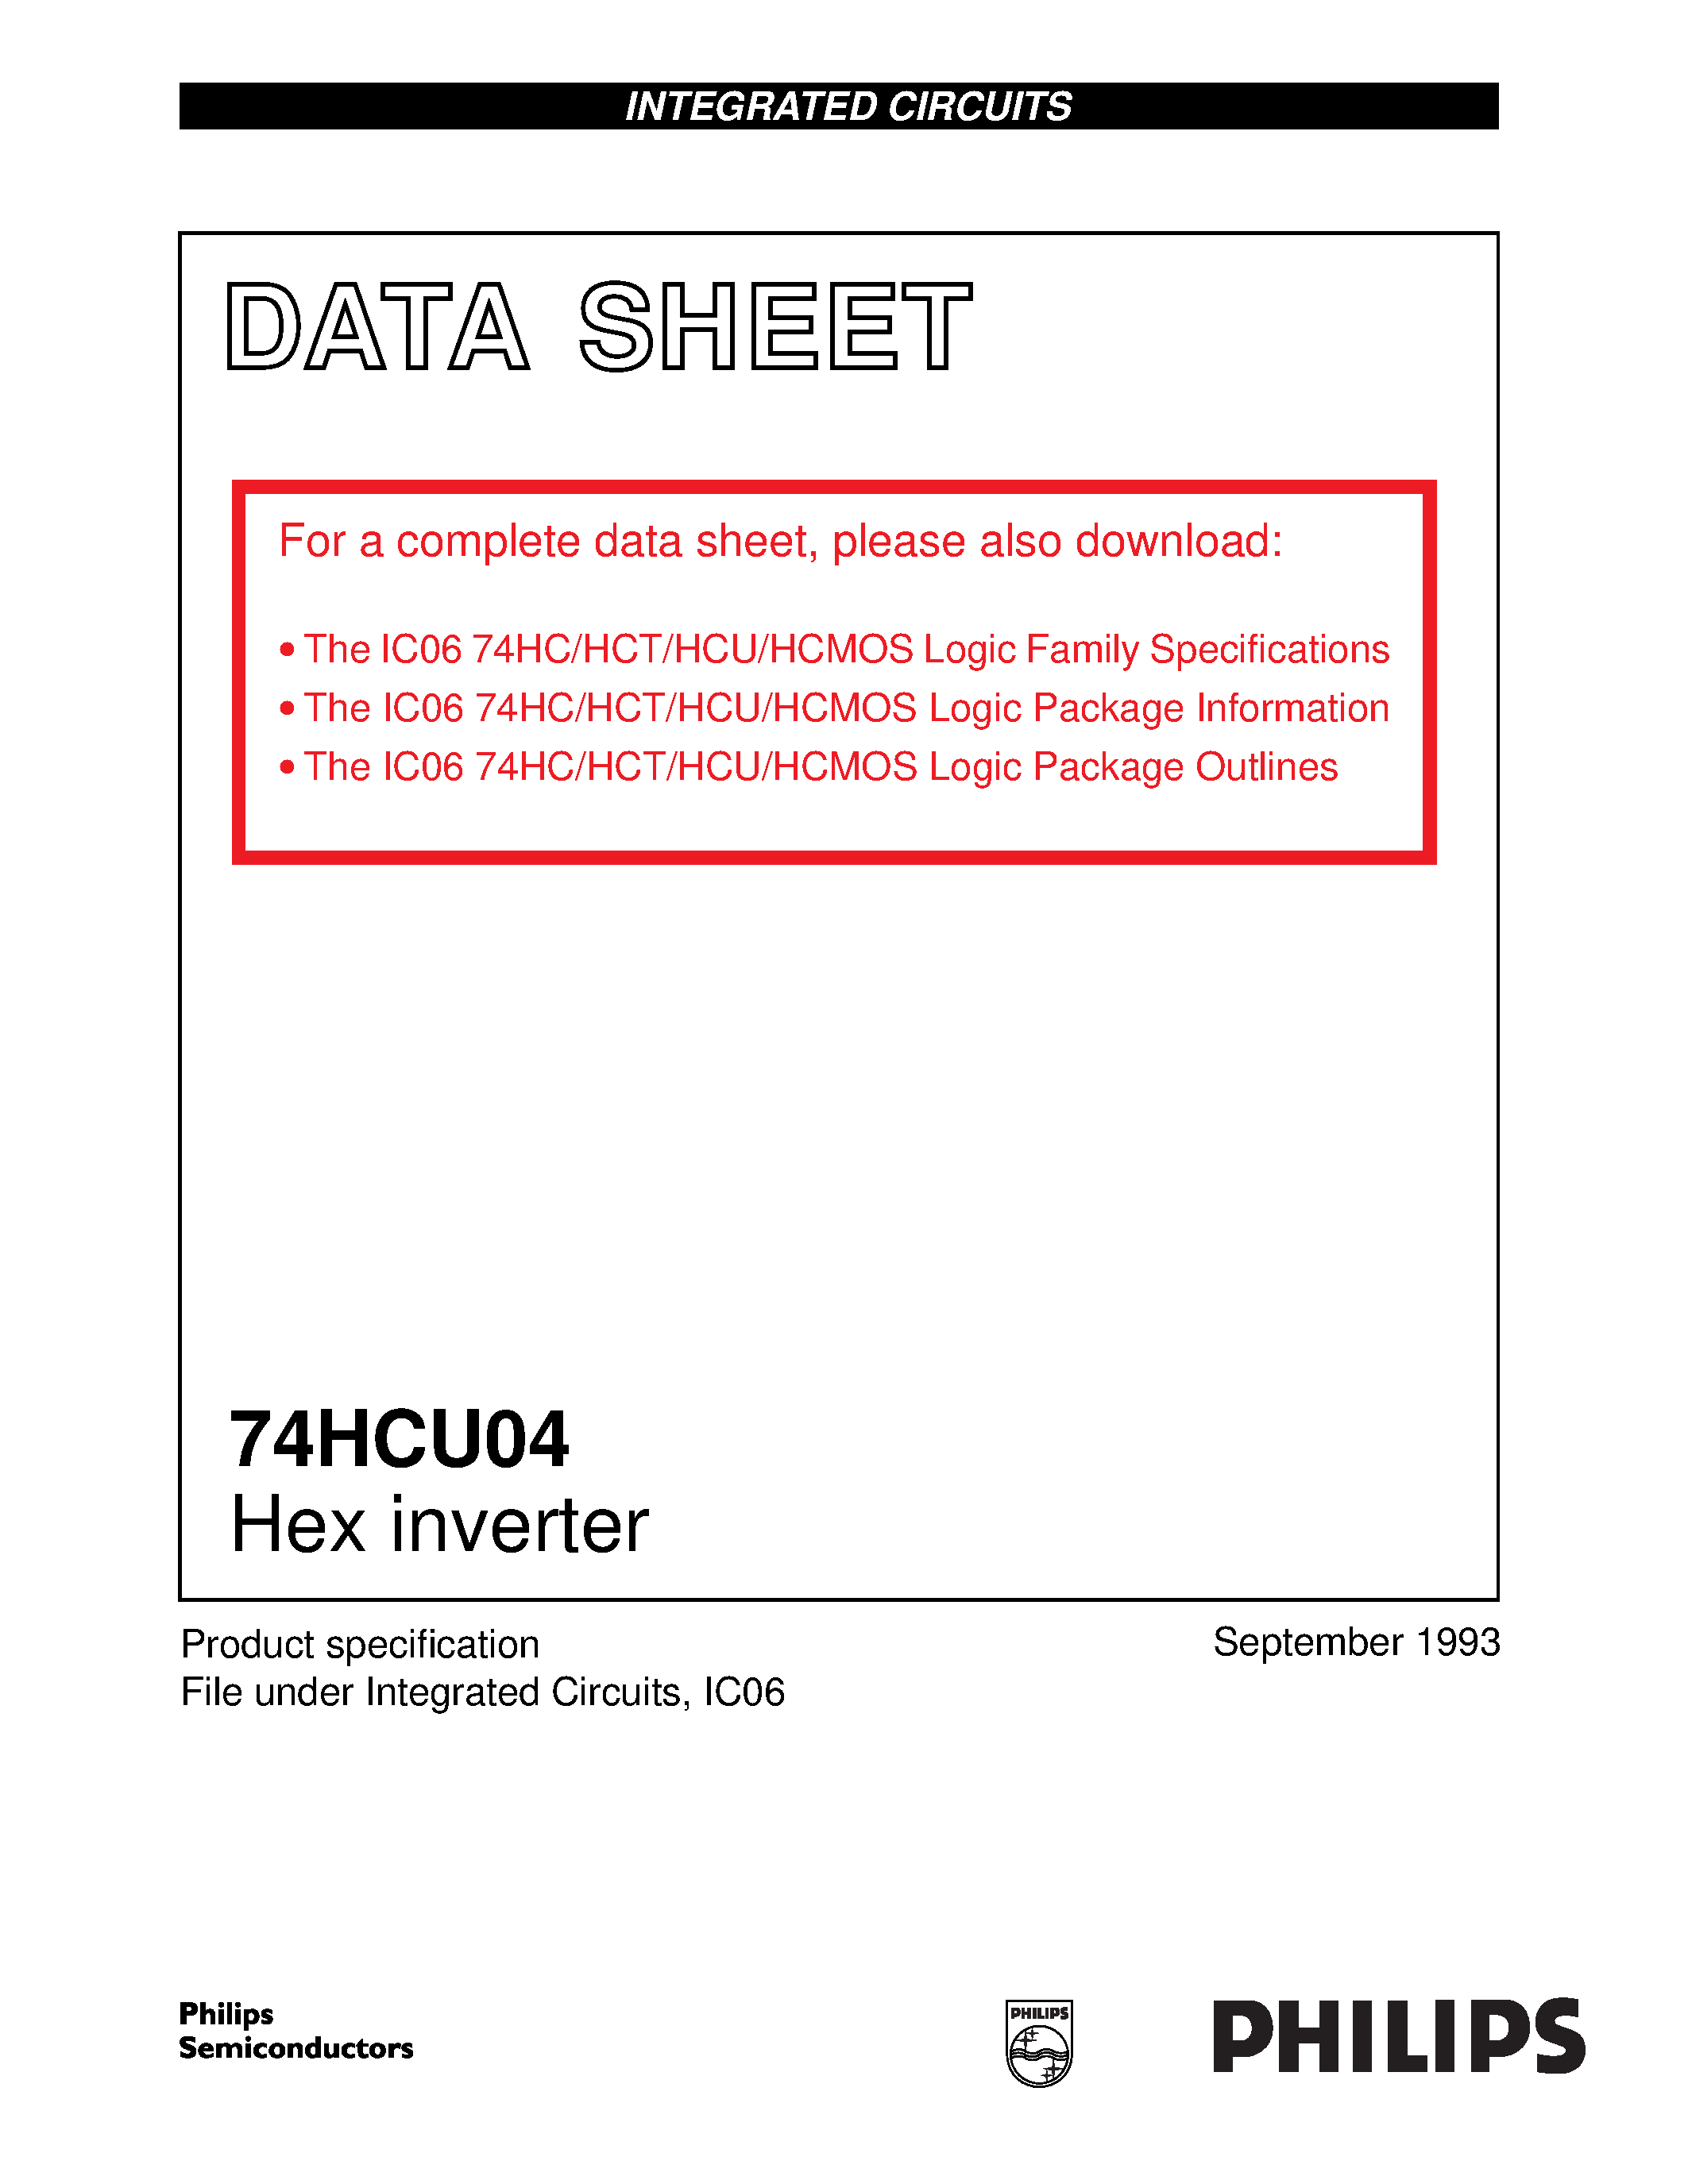 Datasheet 74HCU04 - Hex inverter page 1